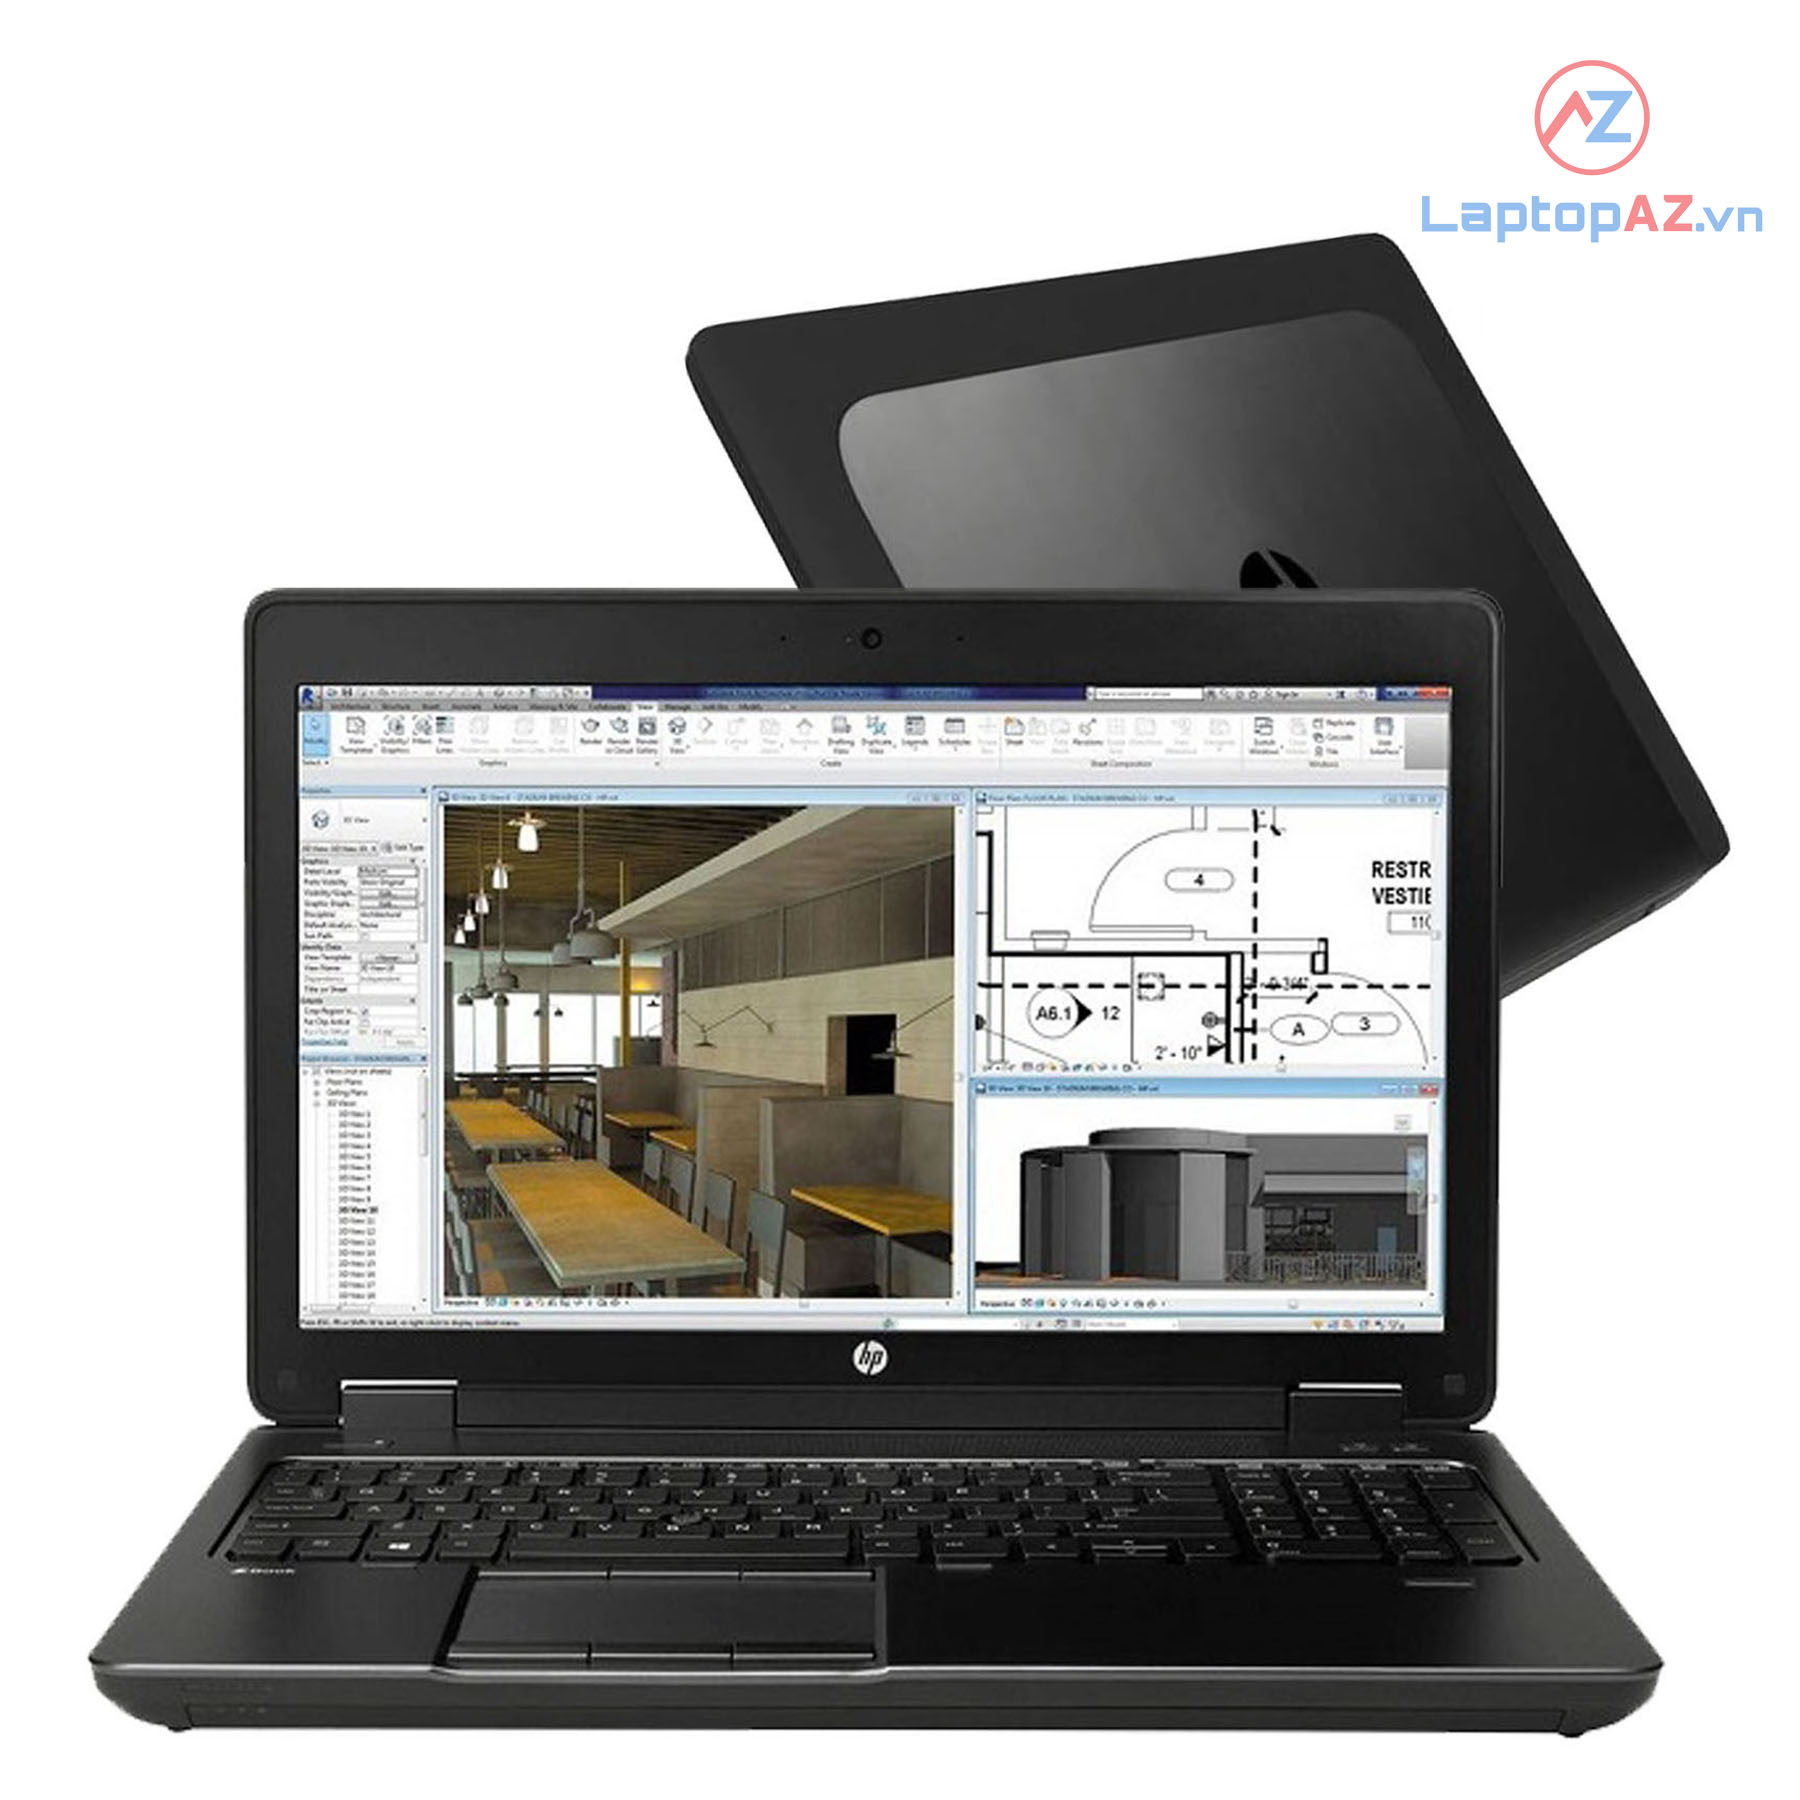 HP Zbook 15 G2 (Core i7-4810MQ, 8GB, 256GB, VGA NVIDIA K2100M, 15.6 inch FHD)